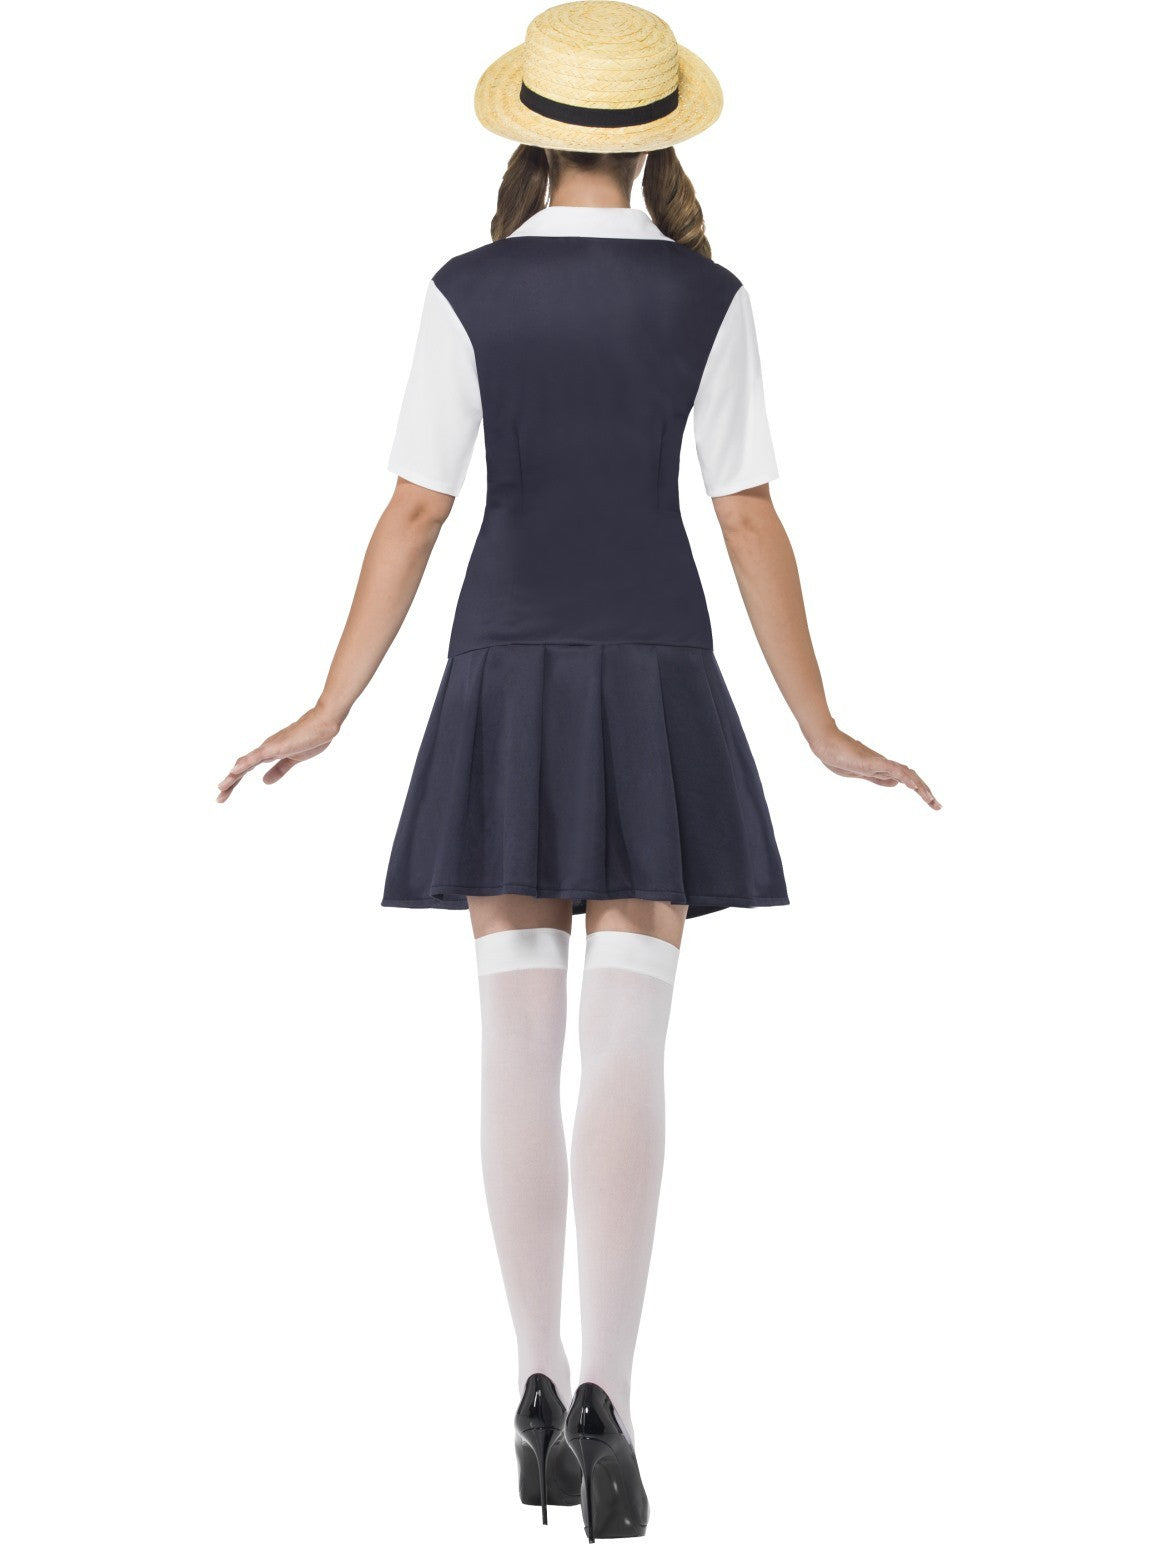 Private School Girl Costume